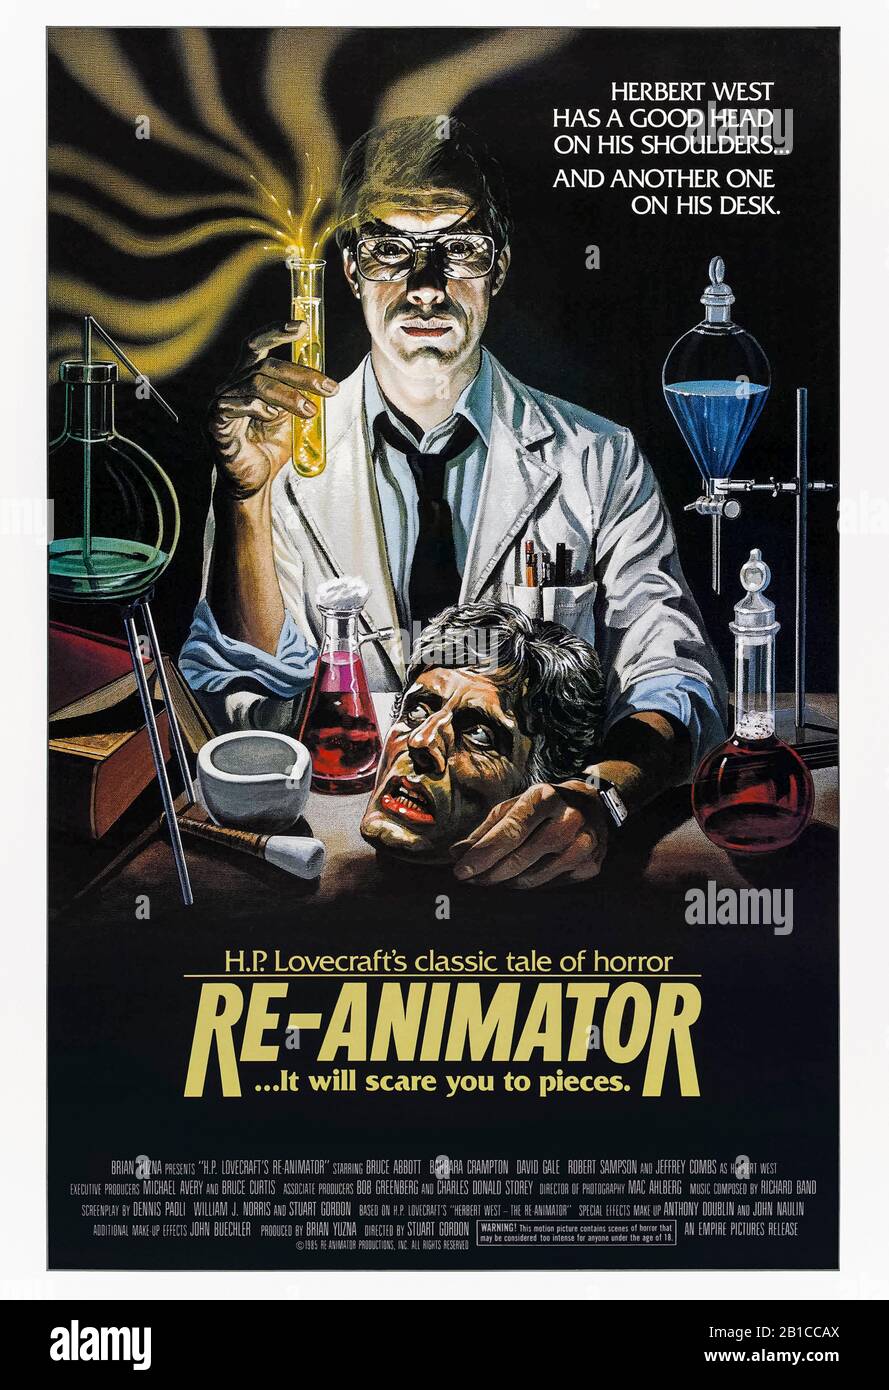 Re-Animator (1985) dirigida por Stuart Gordon y protagonizada por Jeffrey Combs, Bruce Abbott, Barbara Crampton y David Gale. H.P. La clásica historia de terror de Lovecraft sobre un científico loco que reanima el tejido muerto. Foto de stock